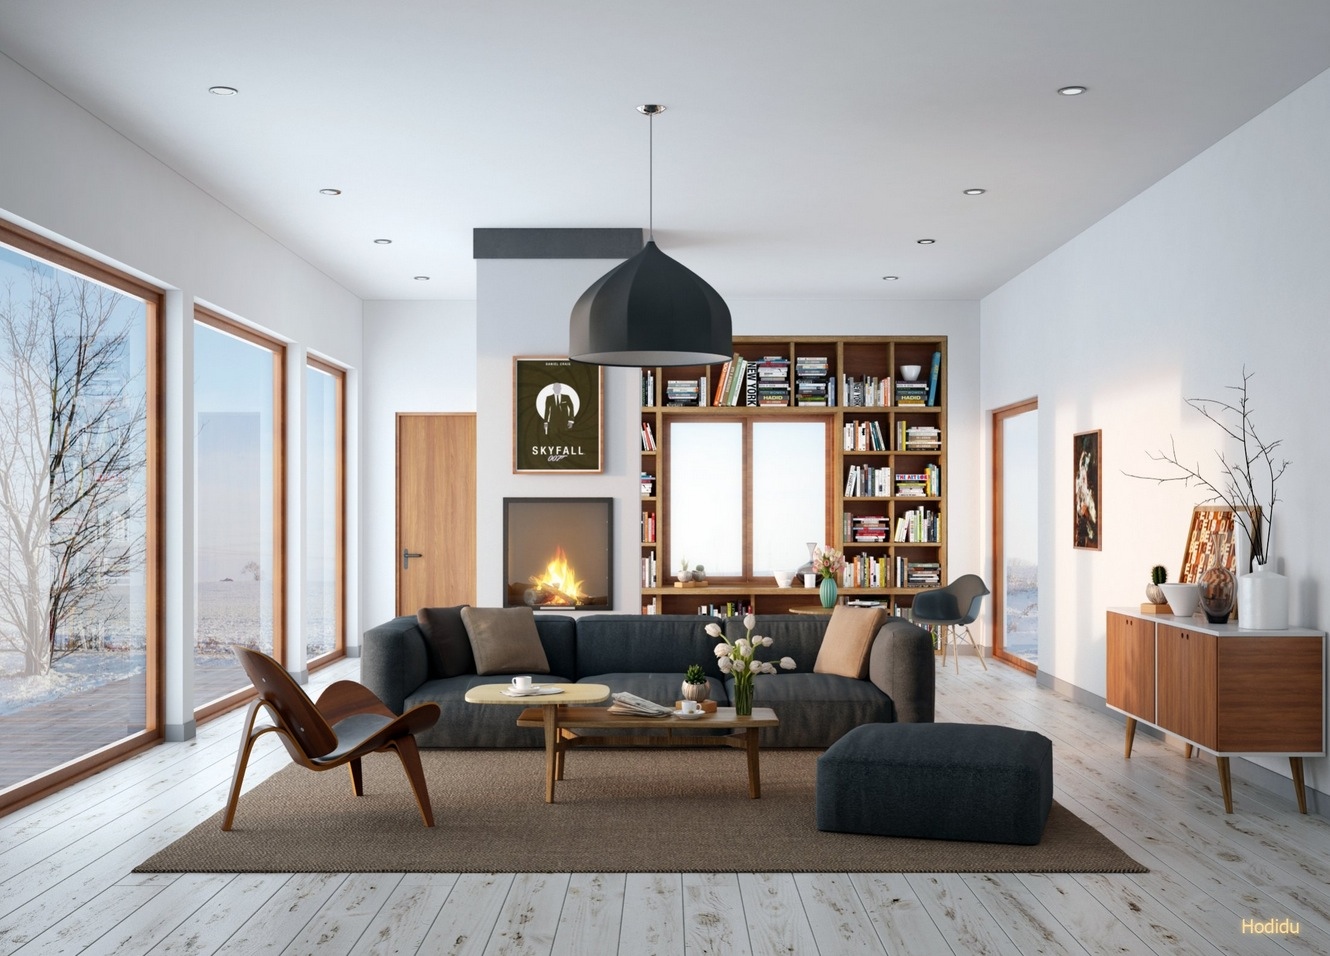 Thiết kế nội thất đưa năng lượng xanh vào không gian phòng khách đem lại sự thư thái